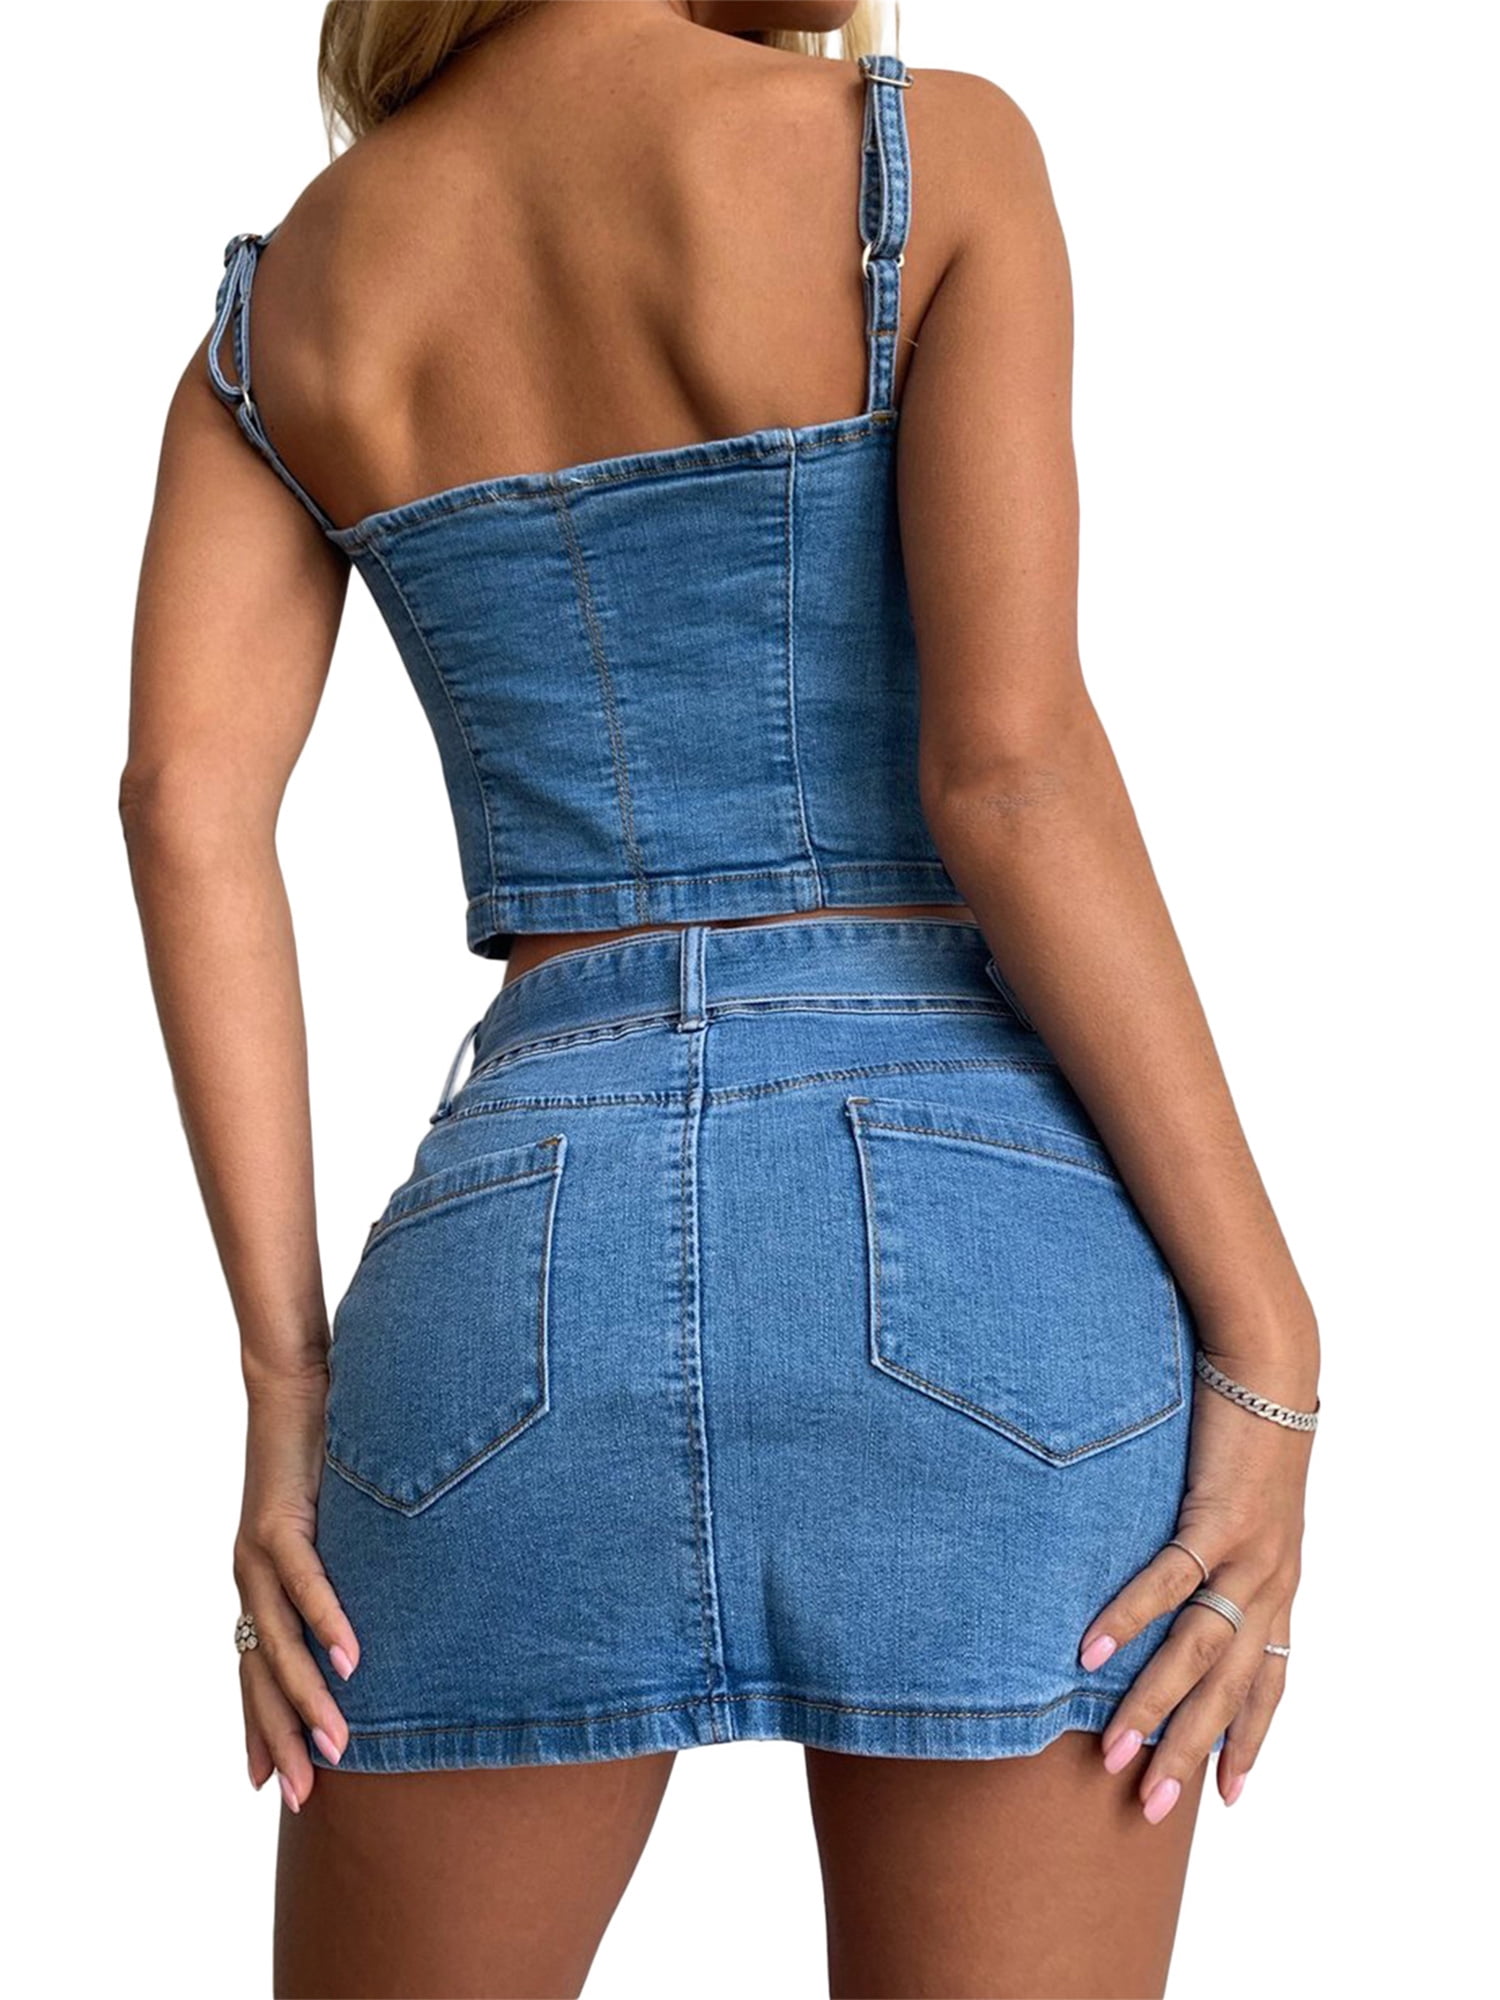 FOCUSNORM Women’s Denim Jeans Blue Zipper Corset Crop Top Sexy Push Up  Bustier Short Mini Skirt